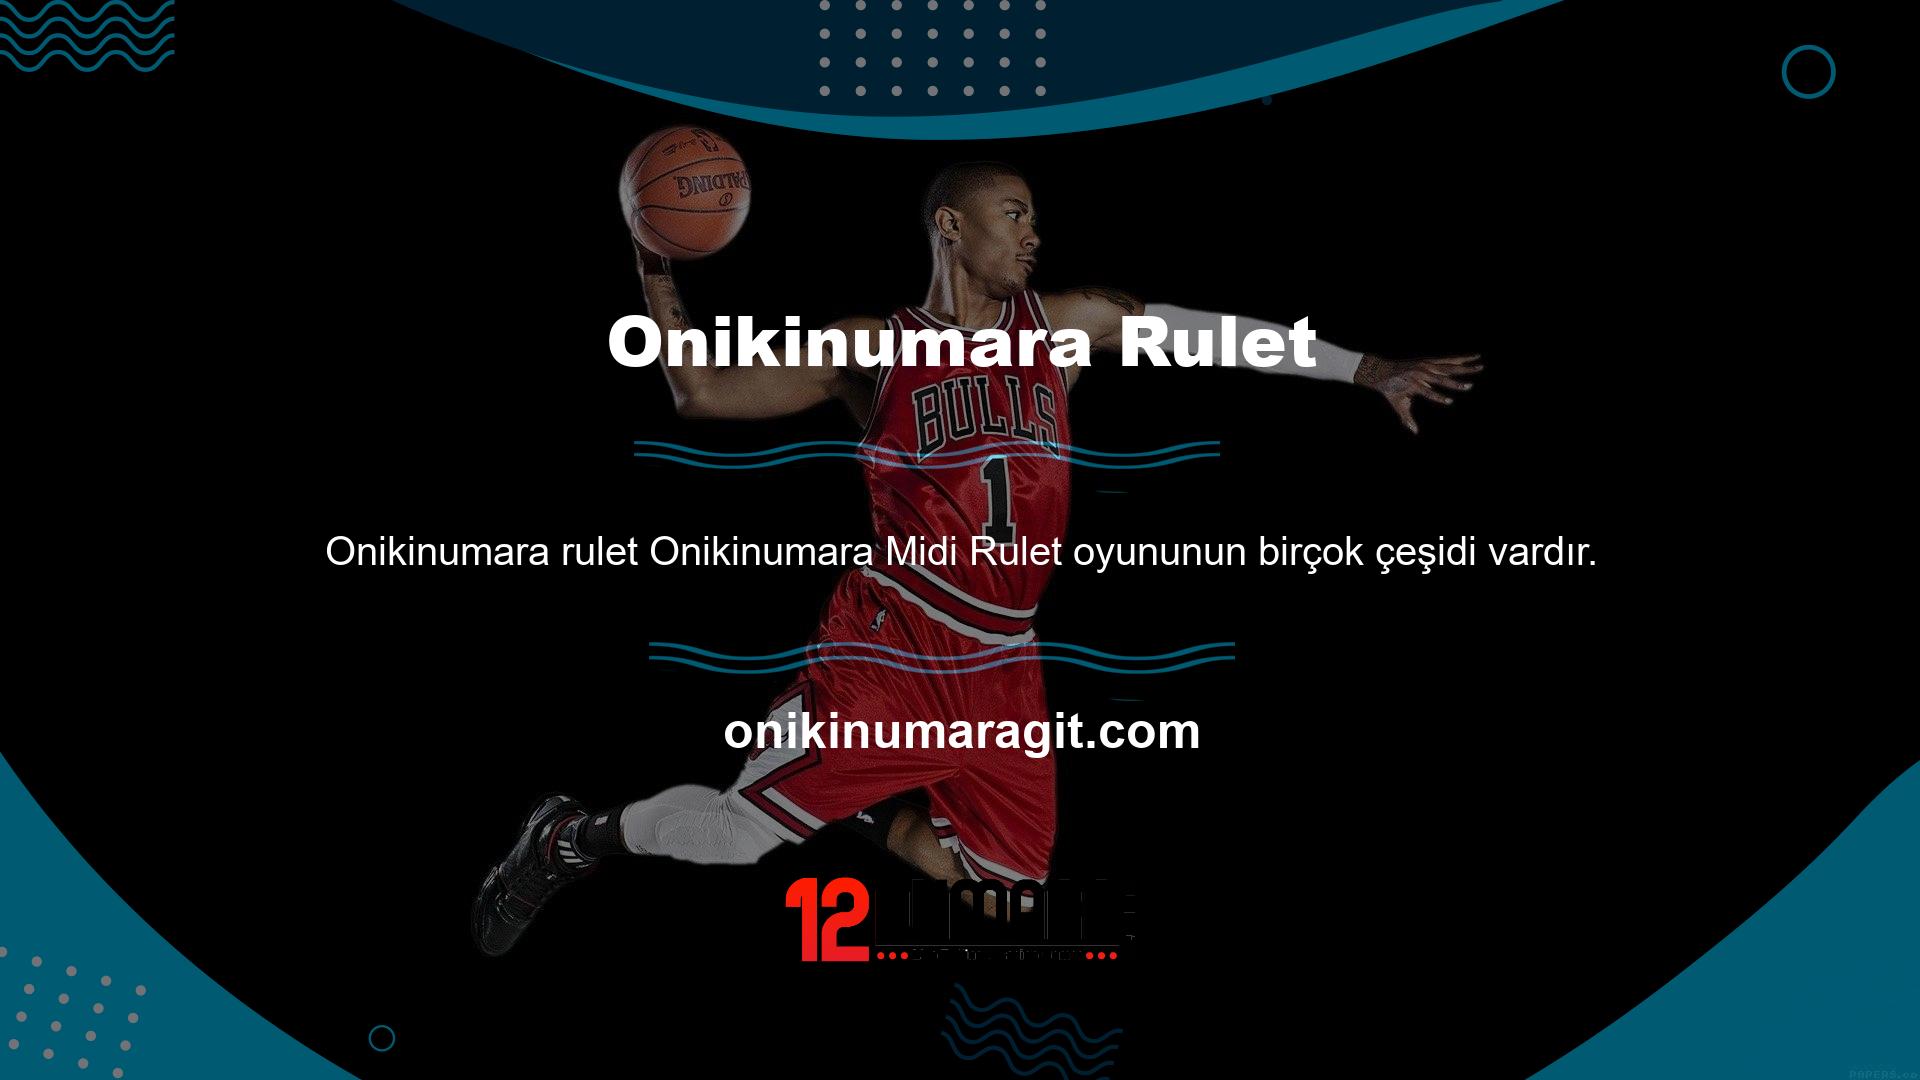 Tamamen ücretsiz bir casino oyunu olan Onikinumara Midi Ruleti de bahis sitesinde mevcuttur